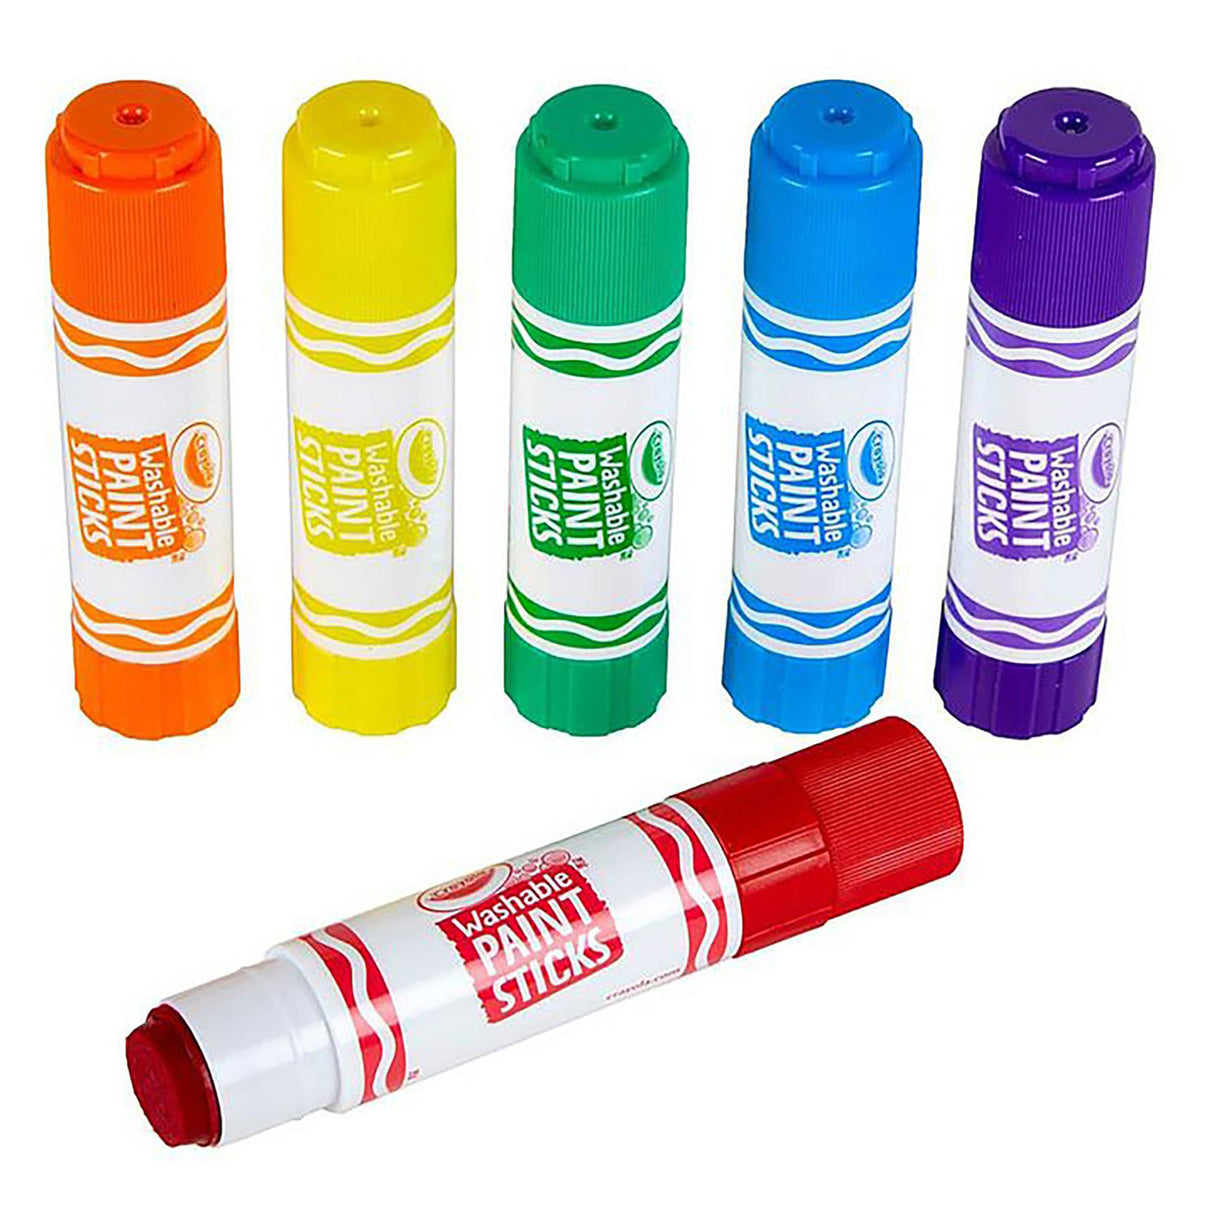 Crayola Washable Paint Sticks (Pack of 6)